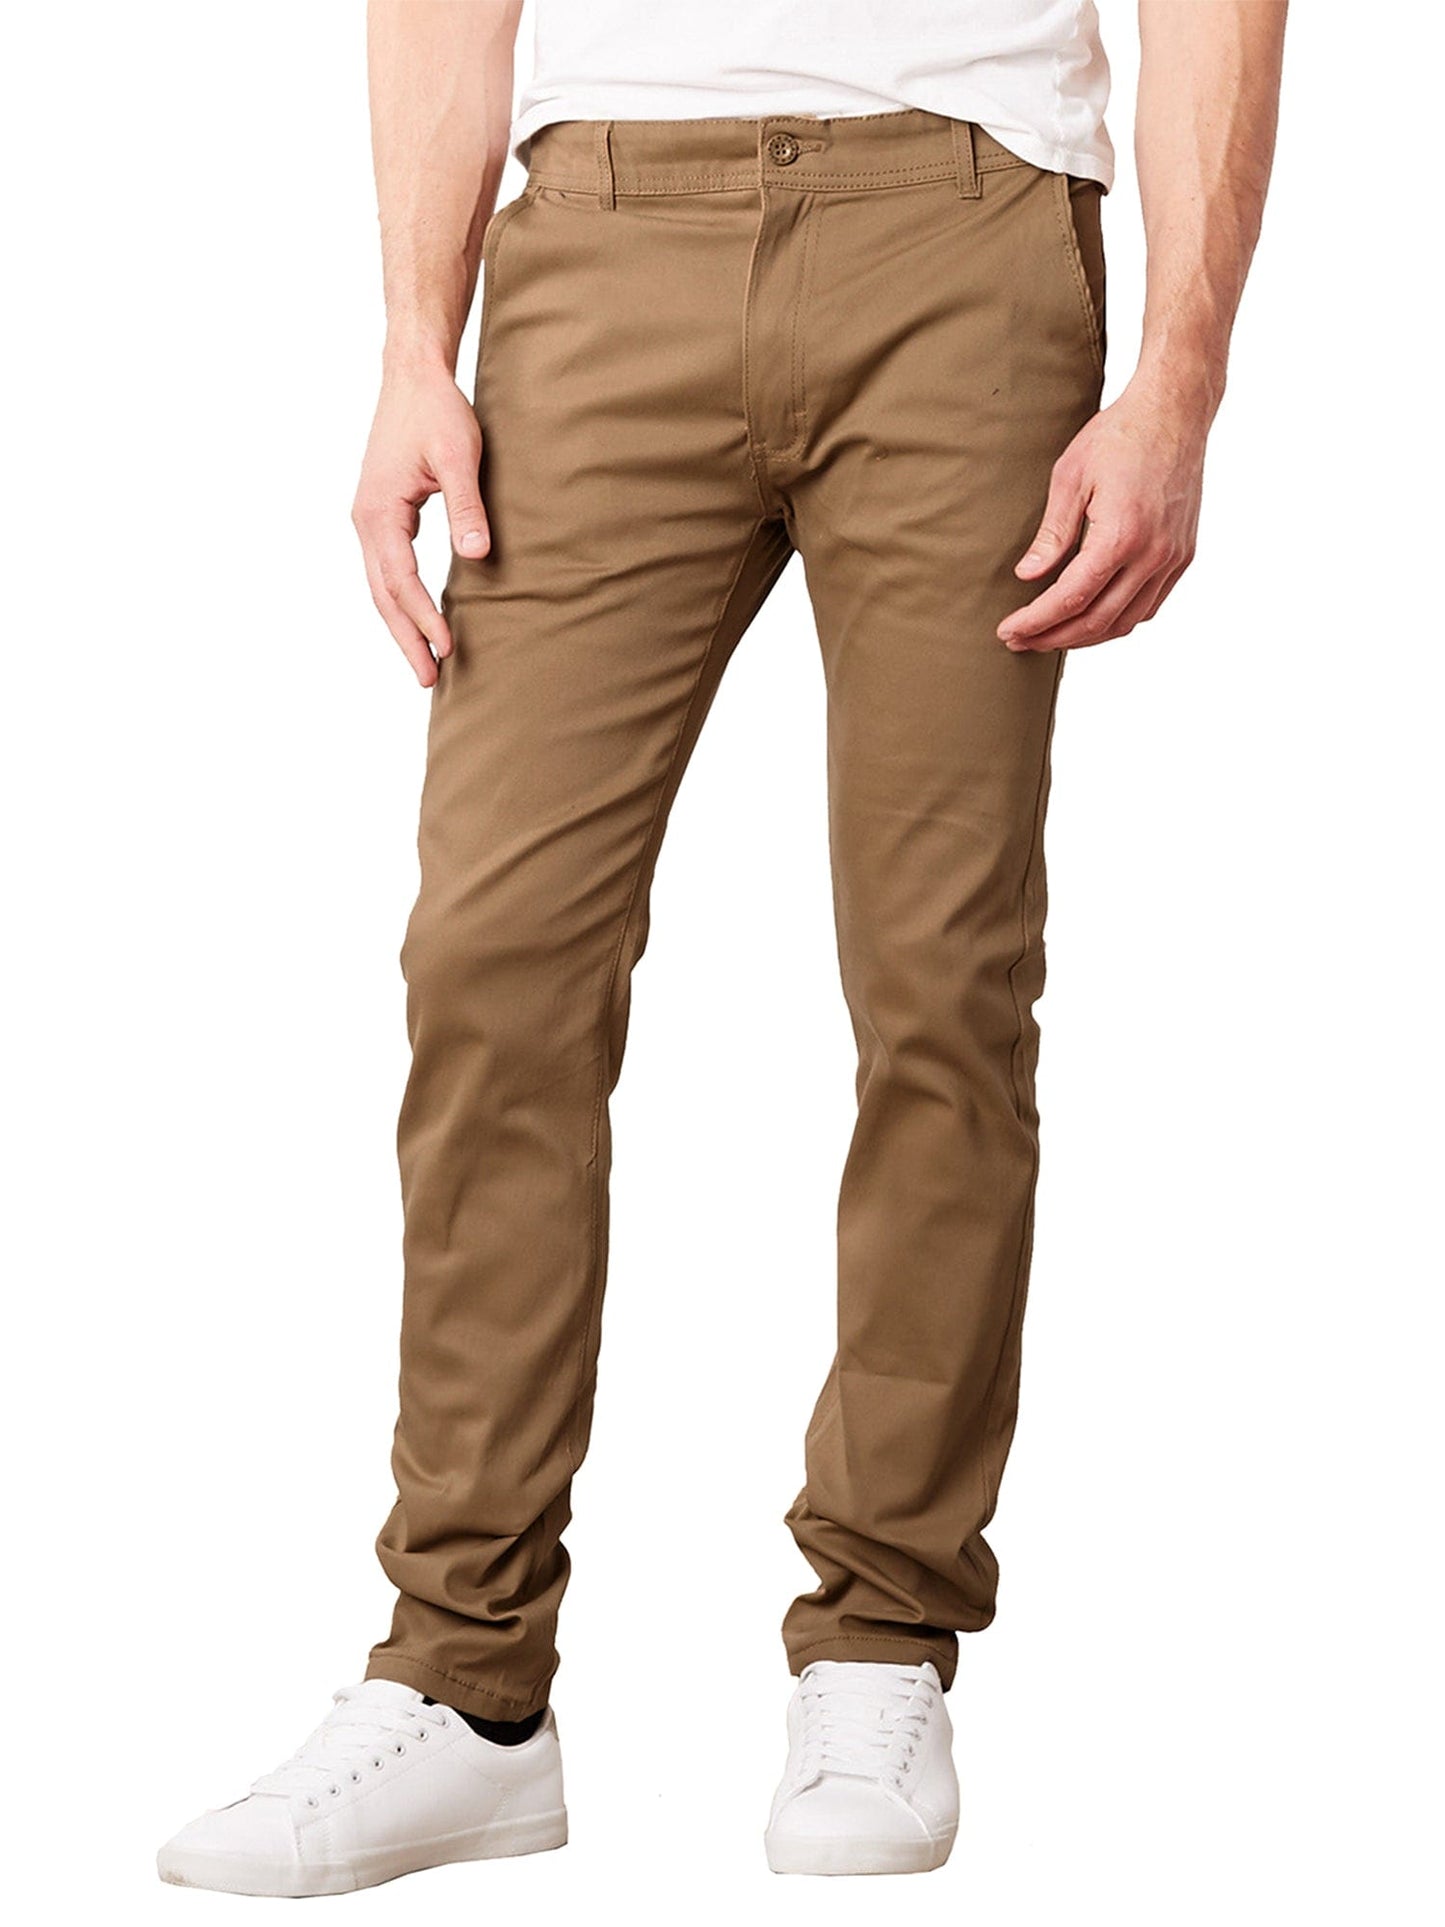 Pantalones chinos súper elásticos y ajustados para uso diario para hombre (tallas 30-42)